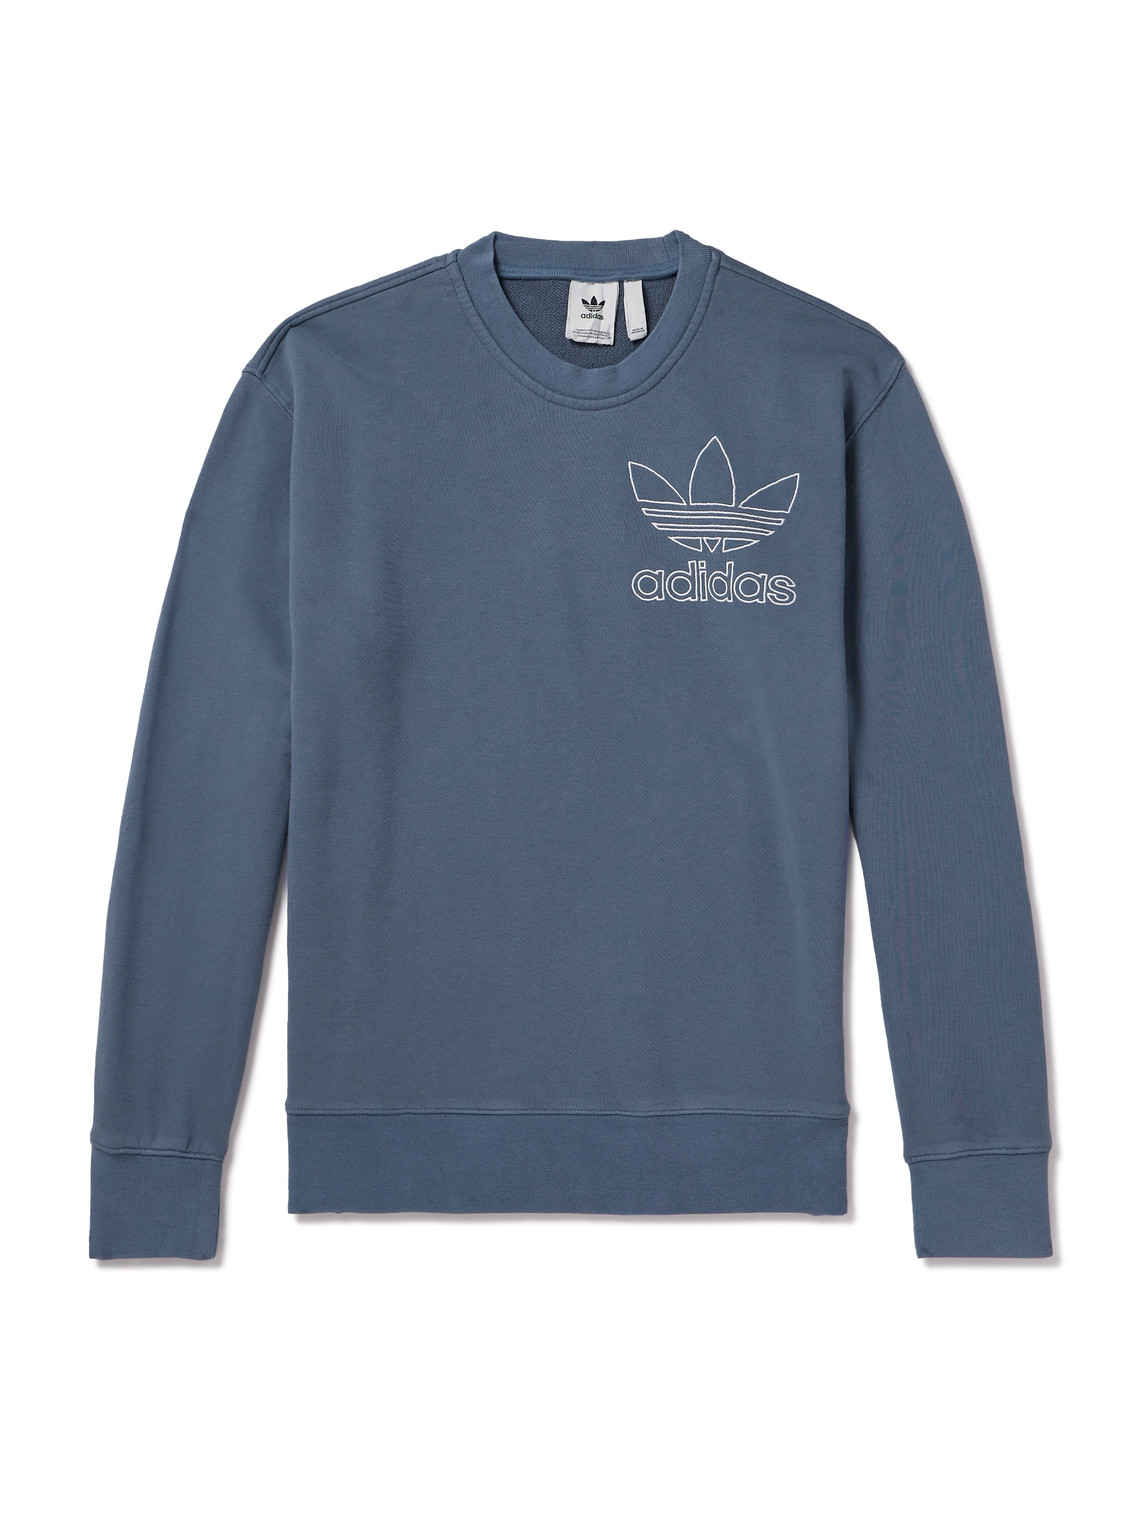 adidas Originals - Logo-Embroidered Cotton-Jersey Sweatshirt - Men - Blue - XL von adidas Originals